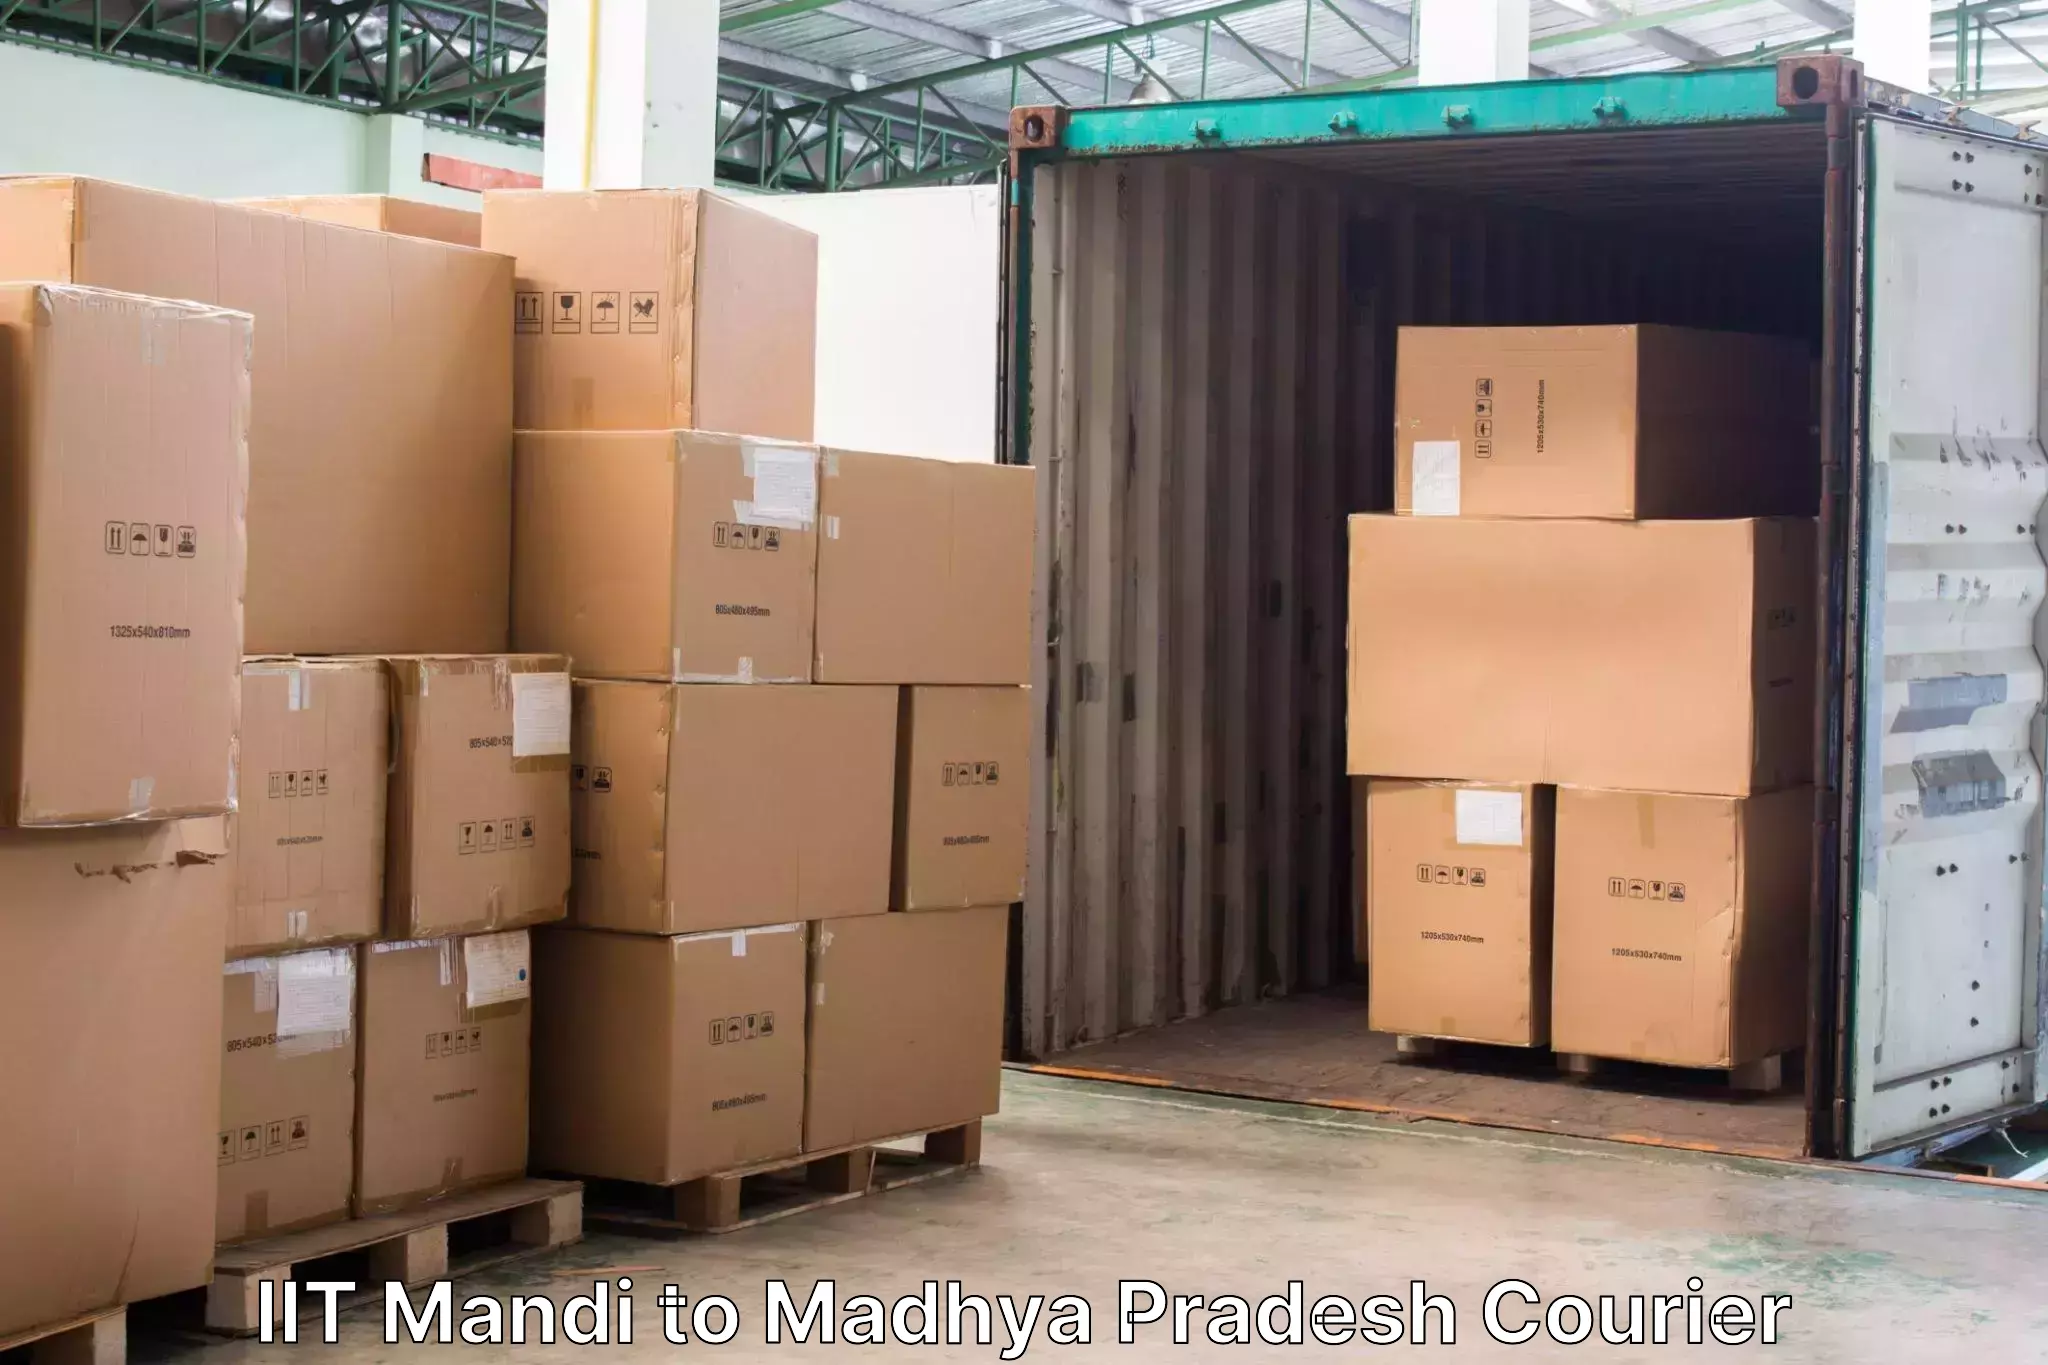 Luggage delivery network IIT Mandi to Harda